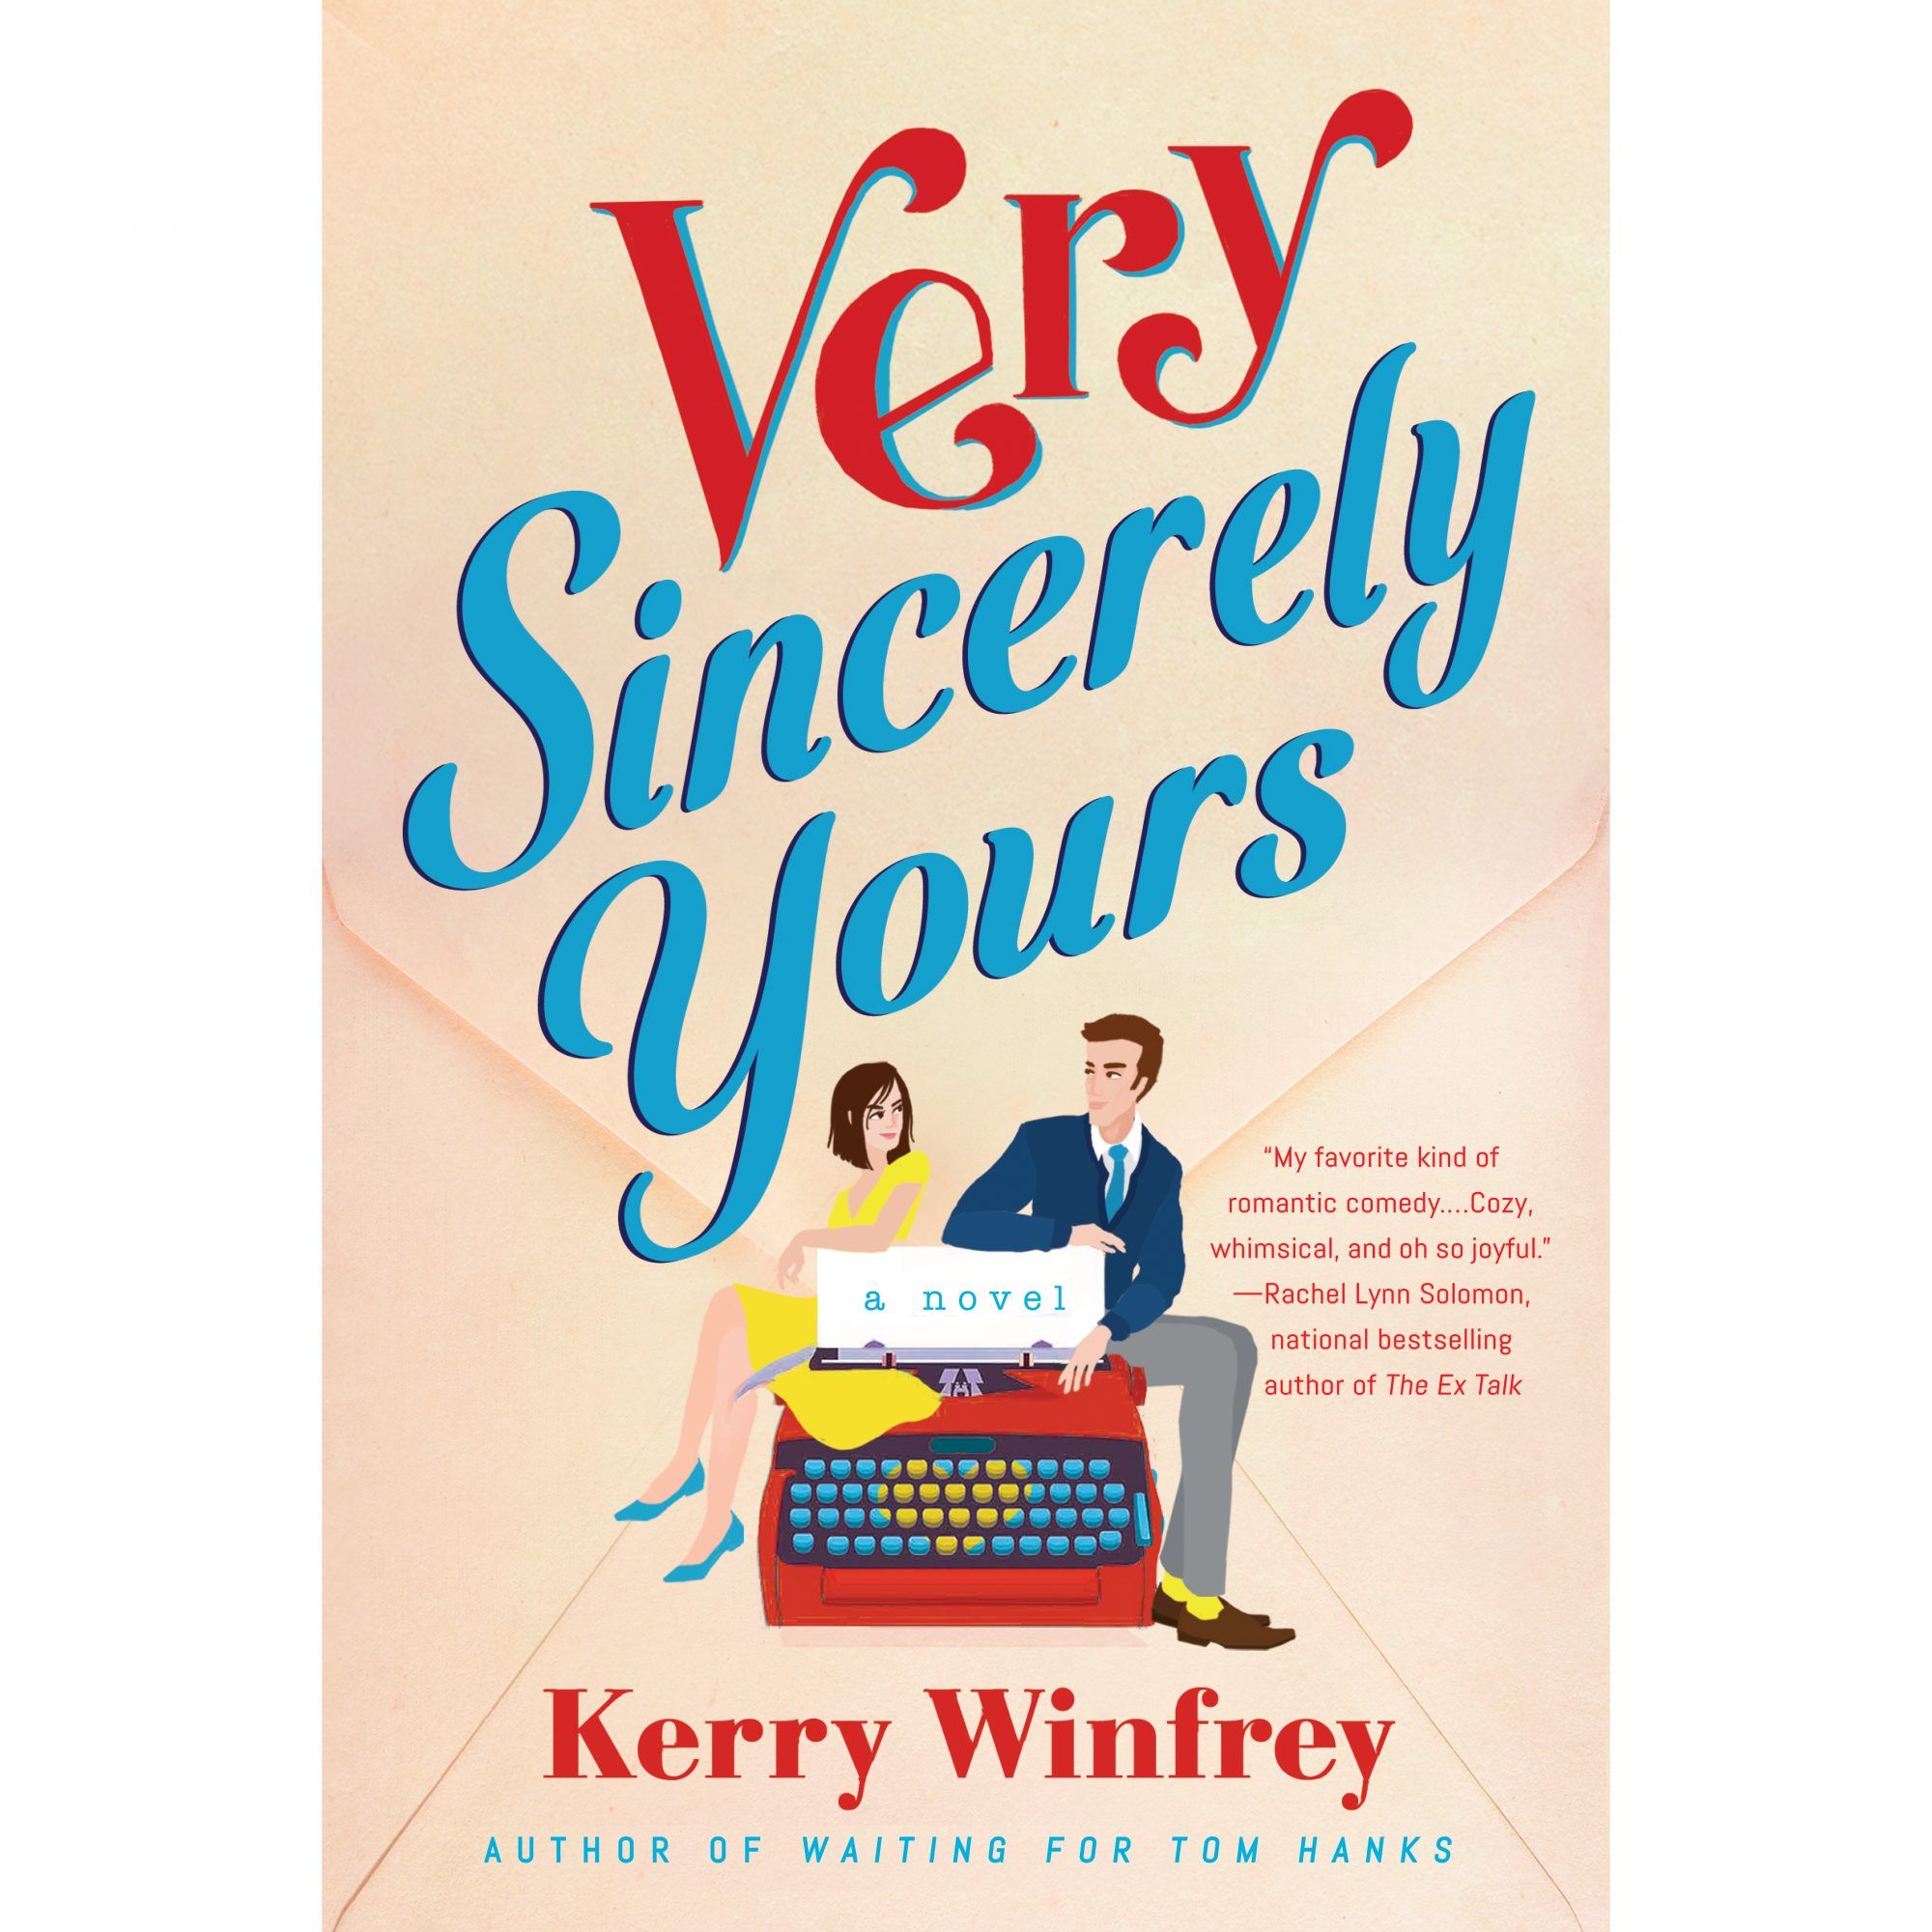 Ystävällisin terveisin Kerry Winfrey